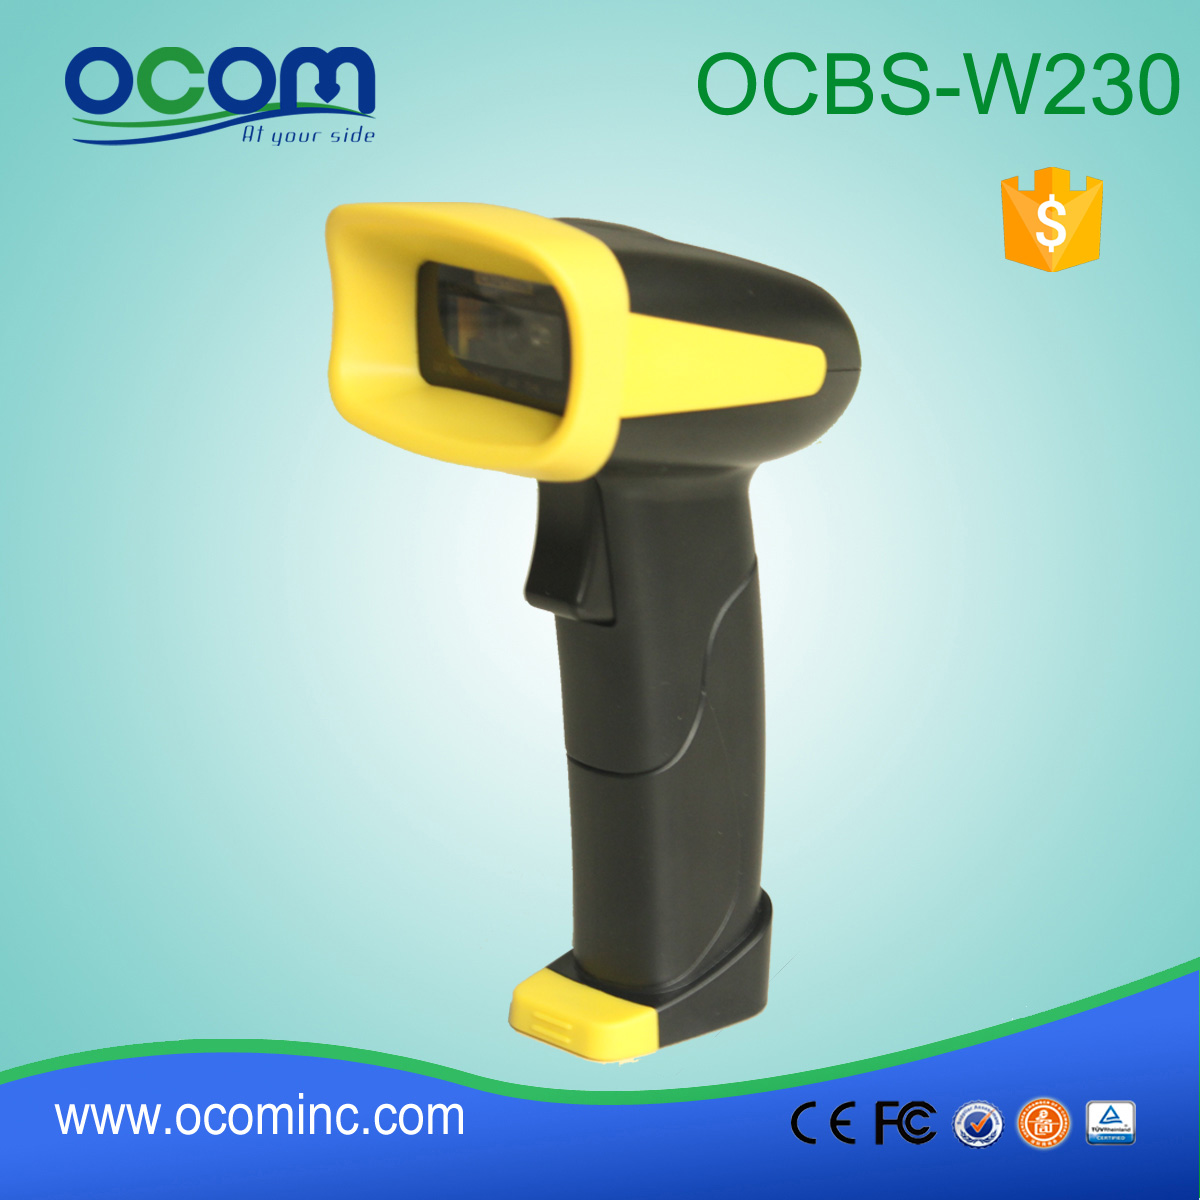 Ręczny skaner kodów kreskowych pamięci do zarządzania magazynem OCBS-W230